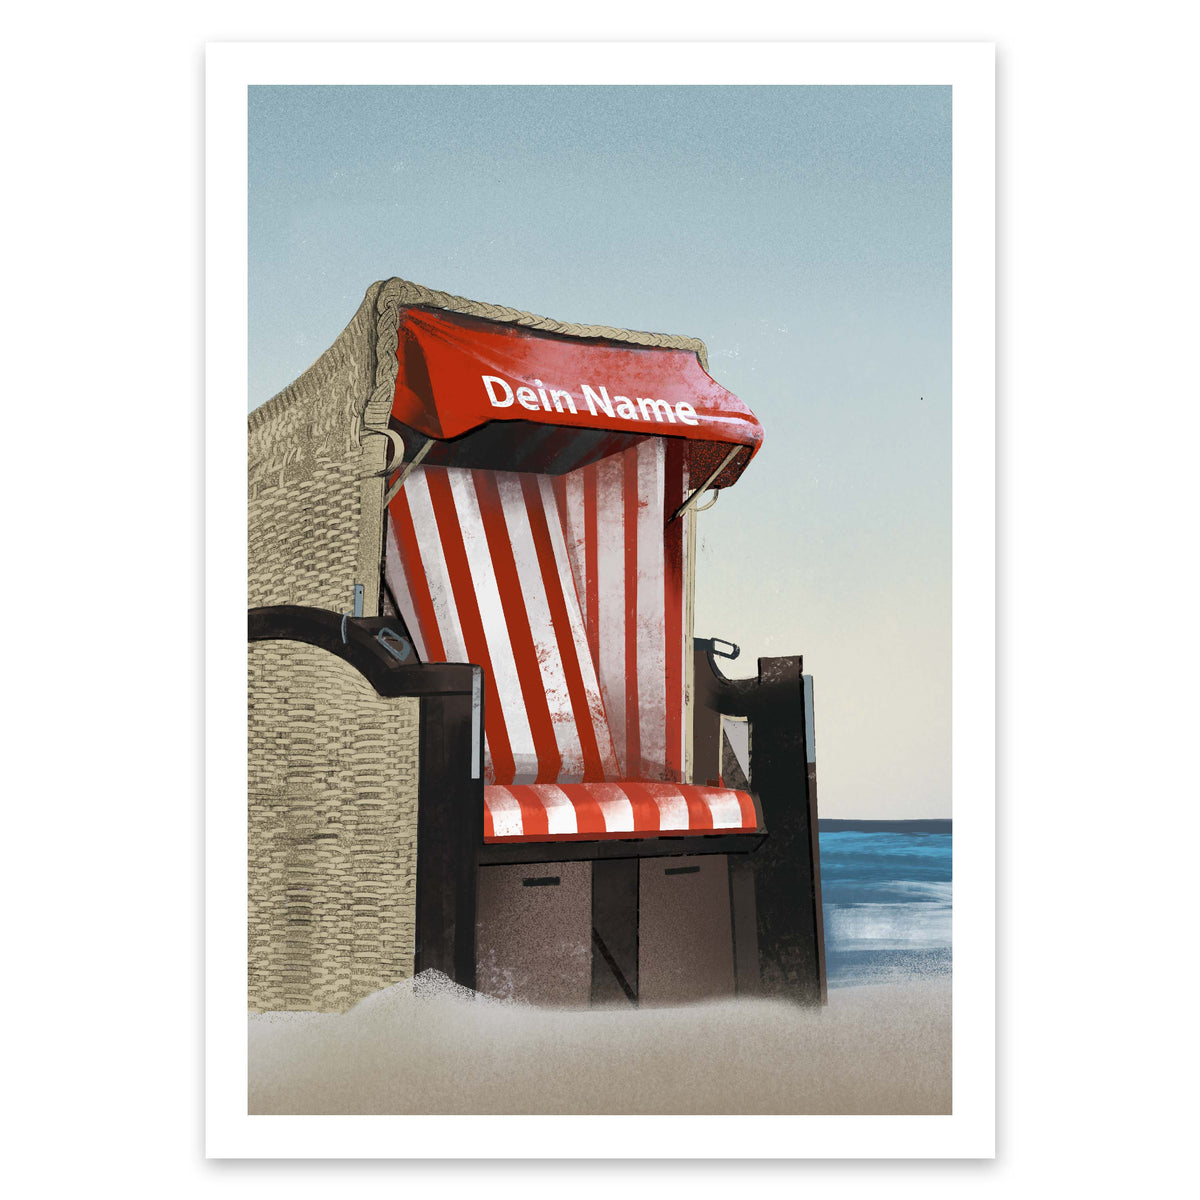 Your own beach chair